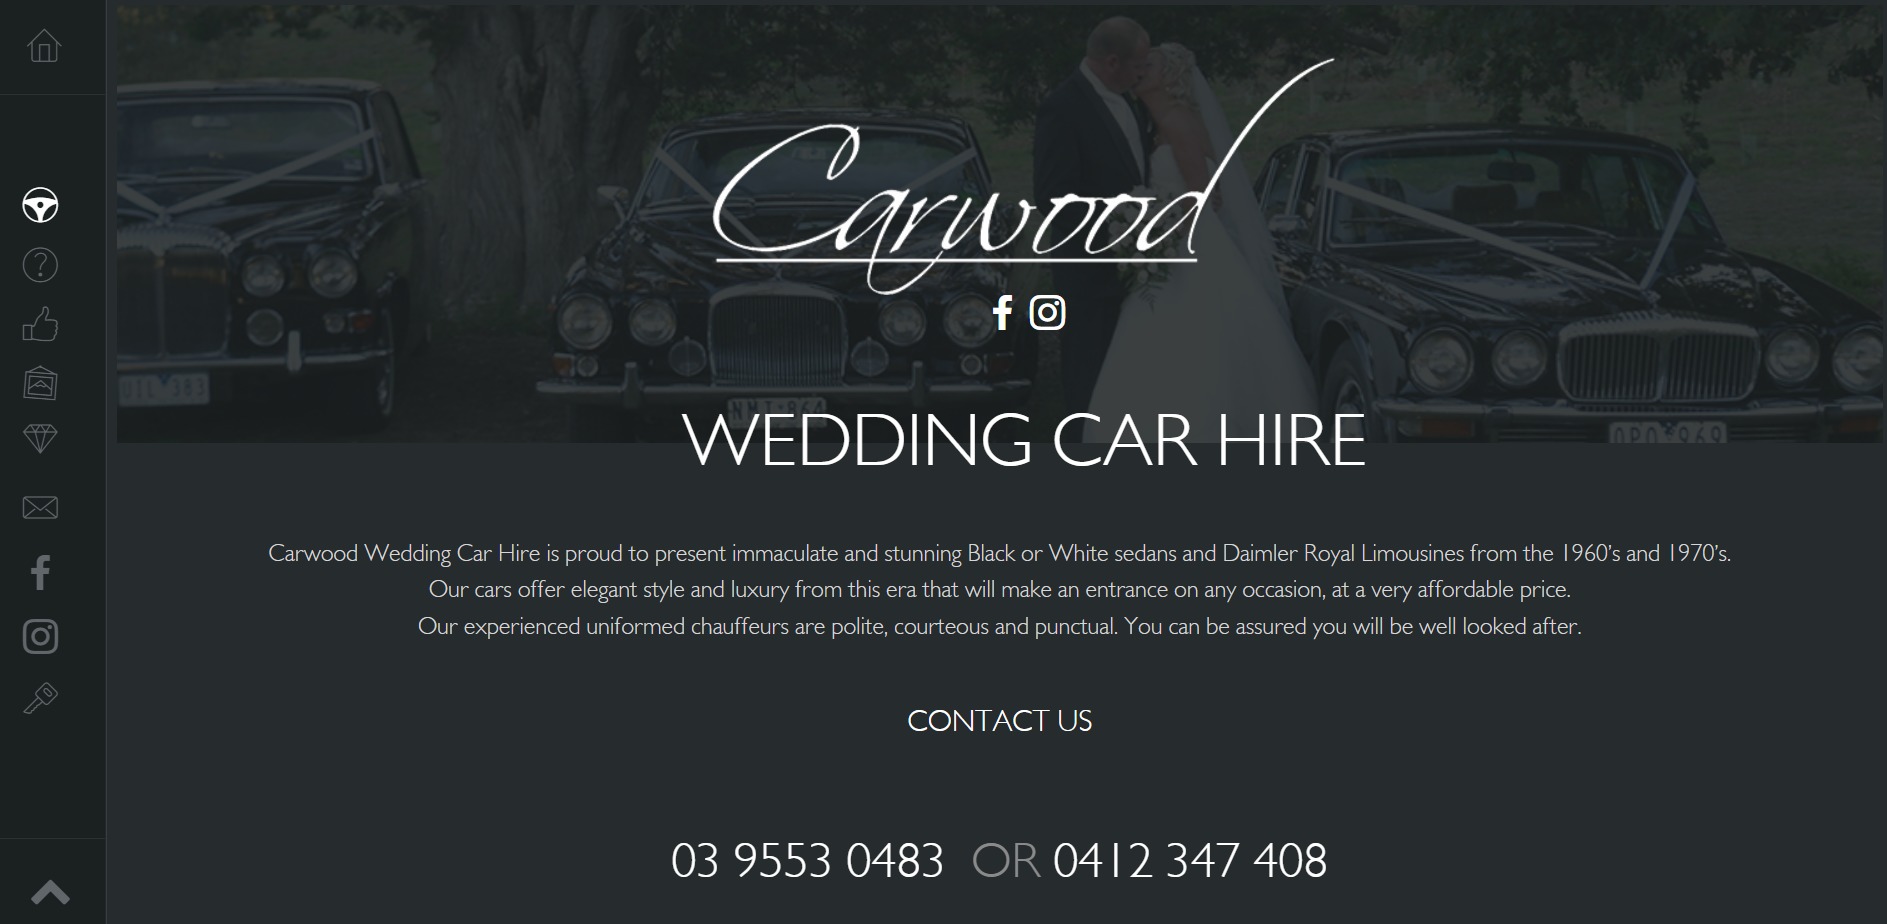 Carwood Wedding Car Hire